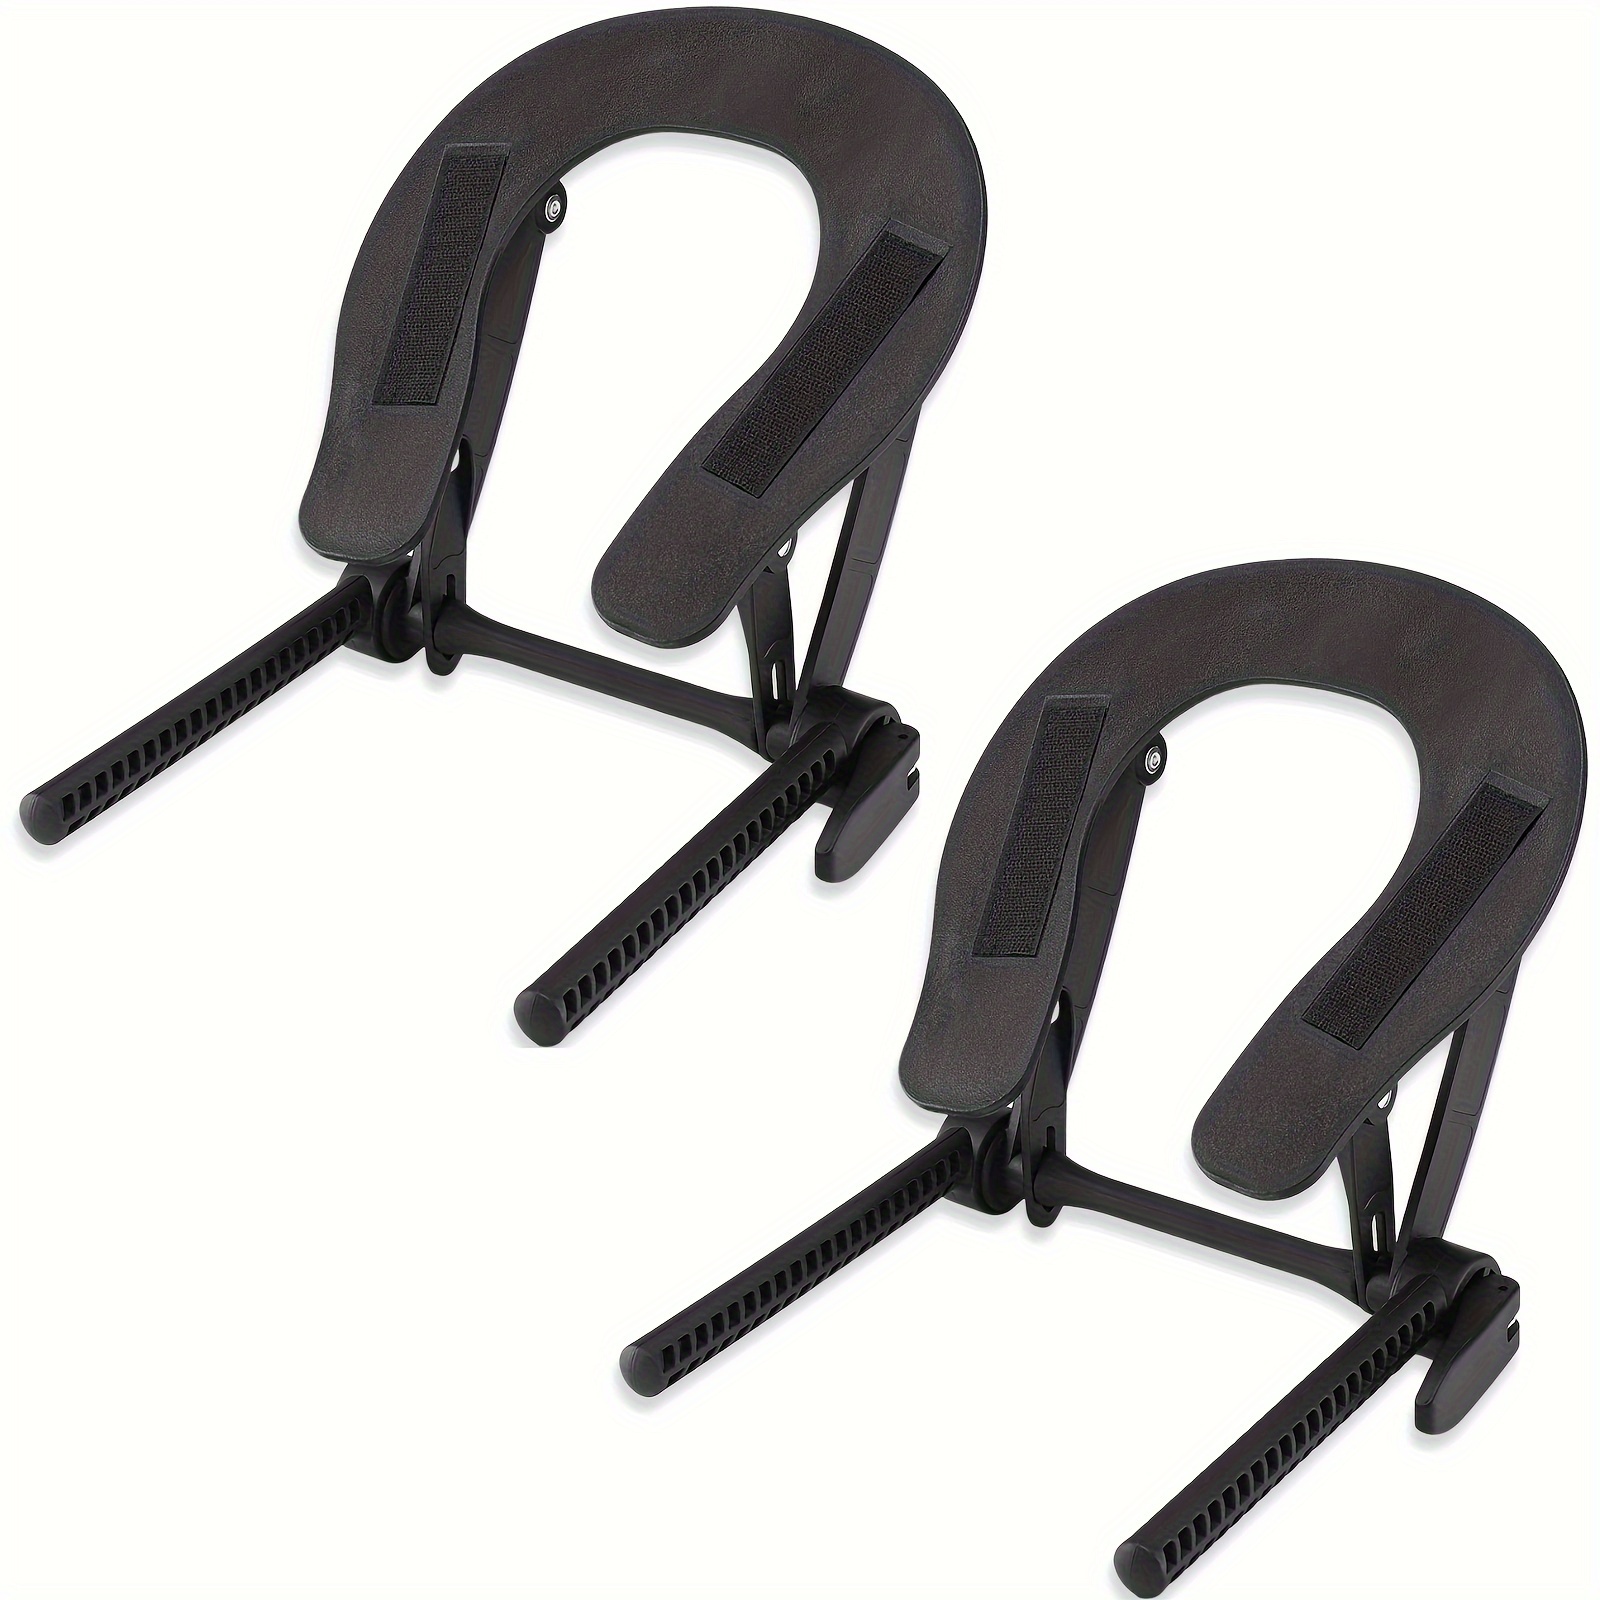 

2pcs/set Massage Table Face Cradle Headrest Platform - Adjustable, Durable, Massage Bed Accessories